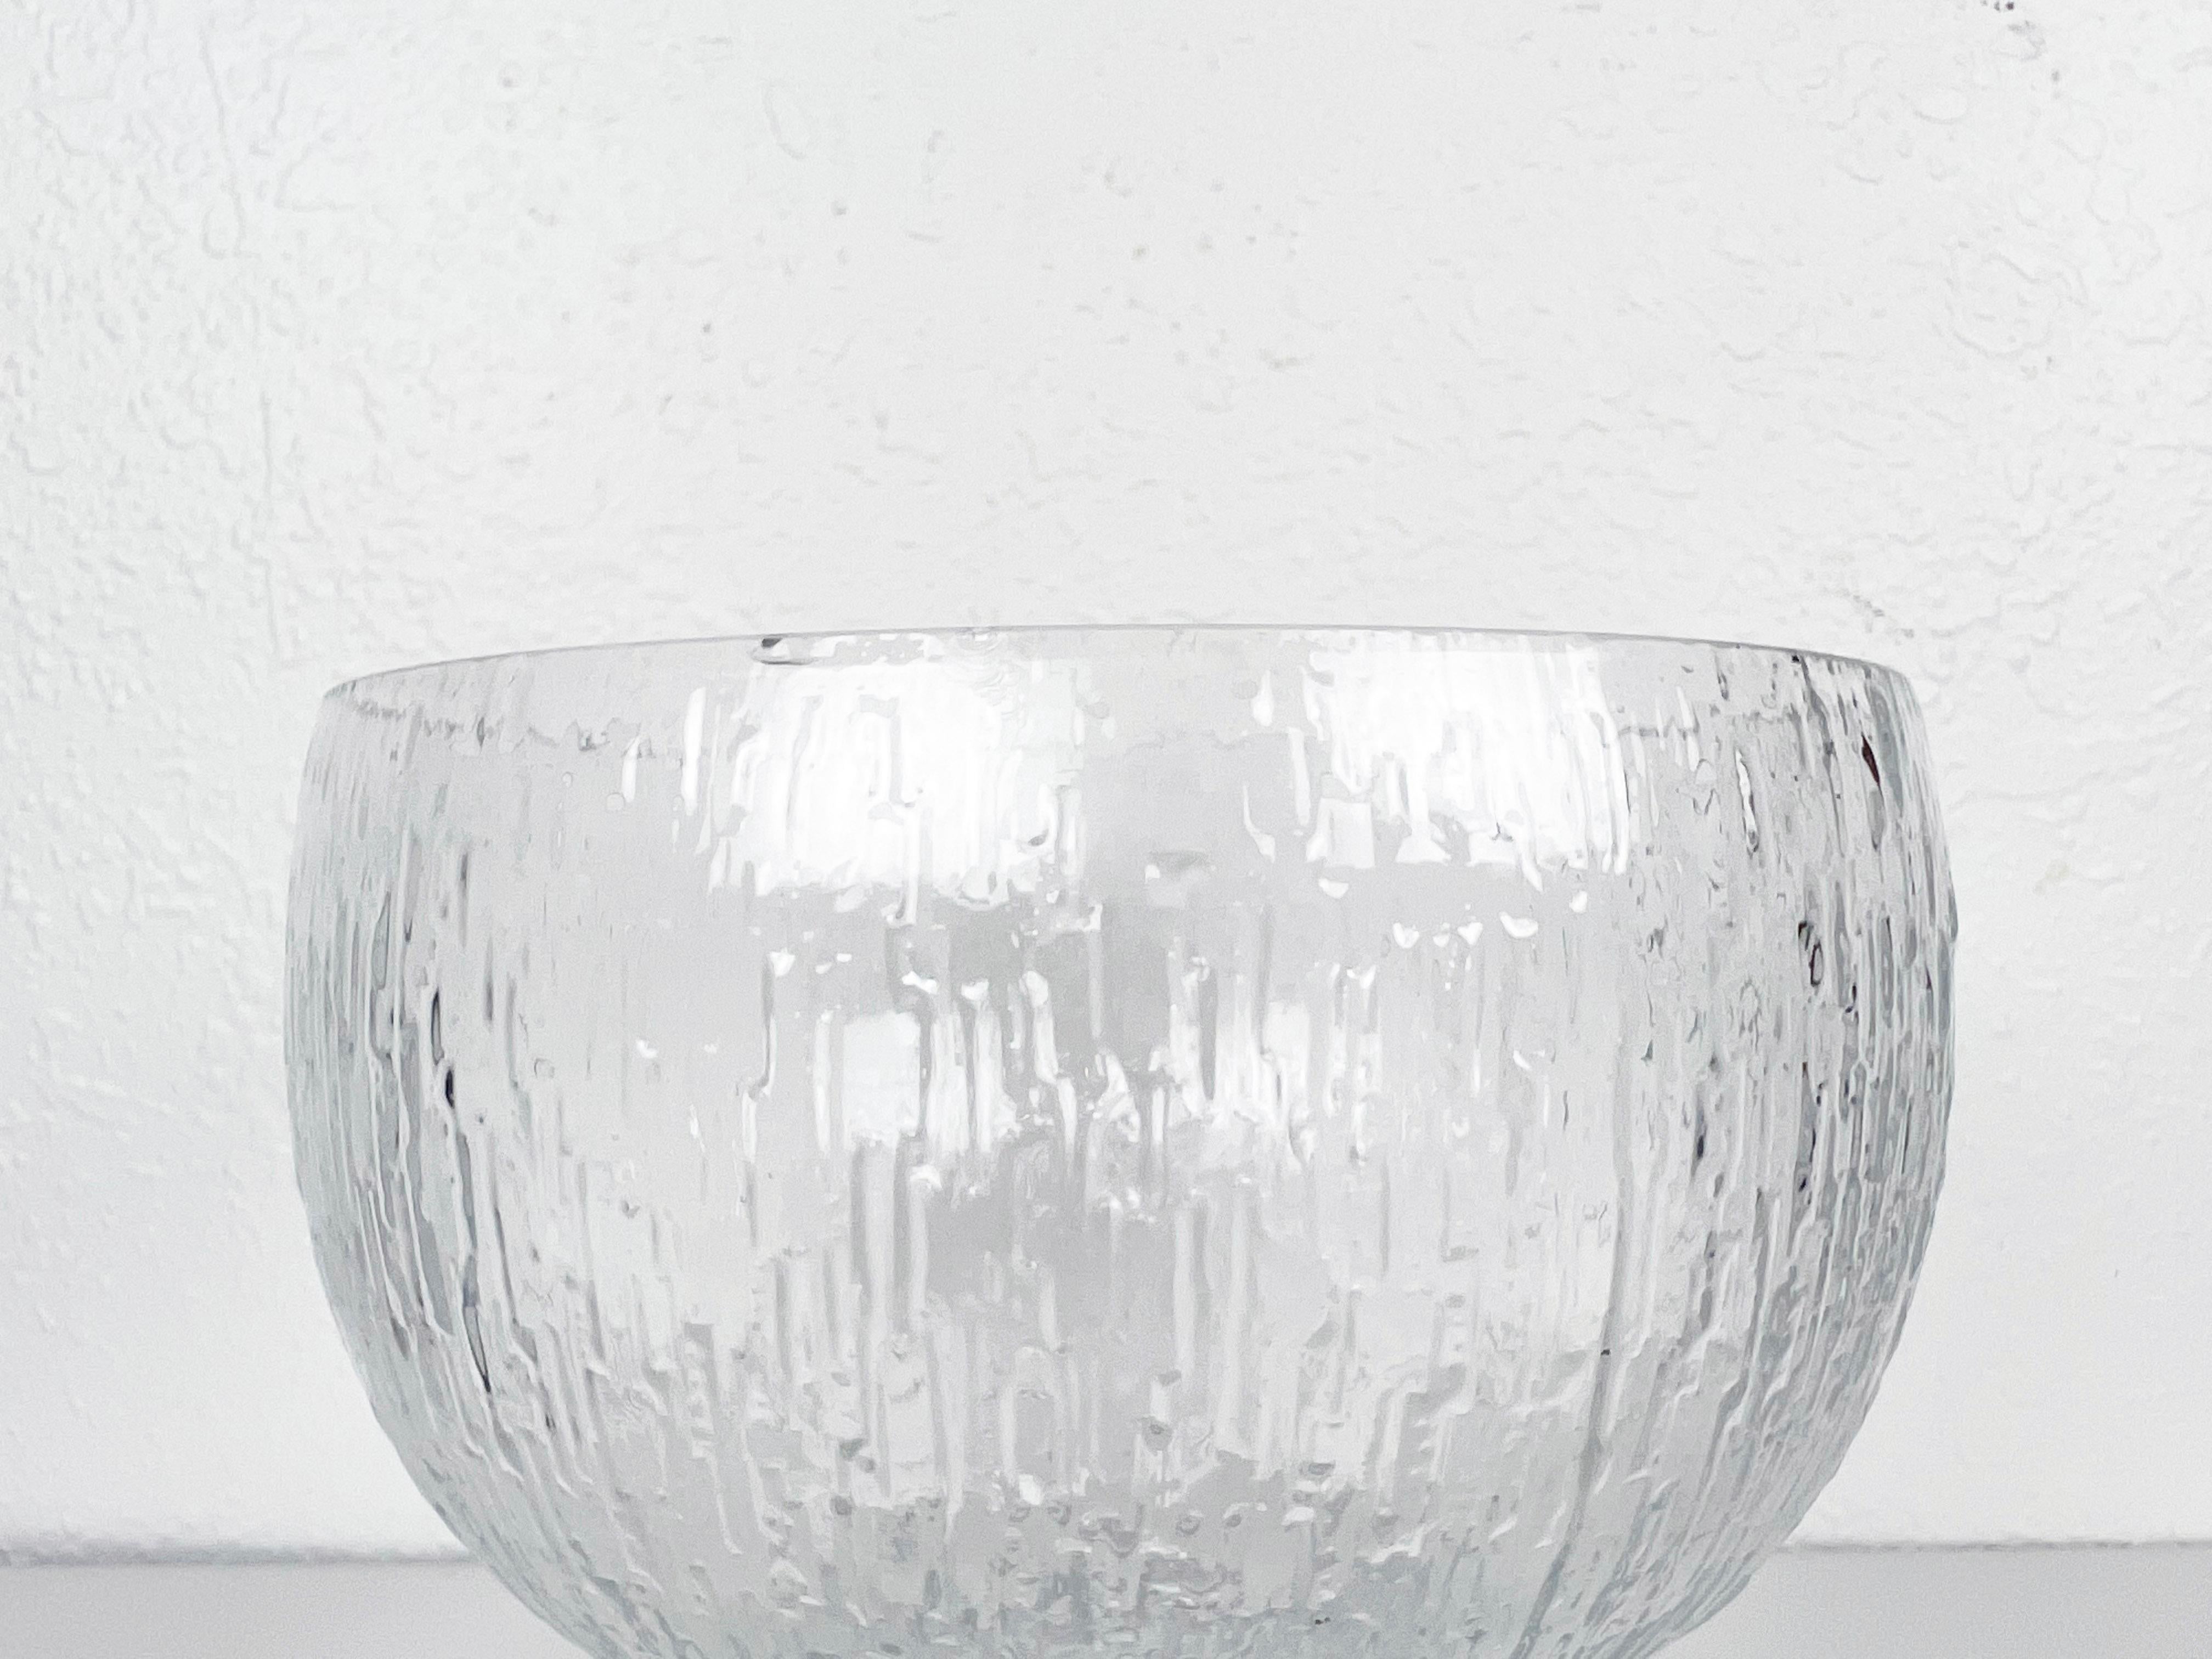 Kekkeri-Schale aus strukturiertem Glas von Timo Sarpaneva für Iittala. 

Hersteller: Iittala

Designer: Timo Sarpaneva

Herkunft: Finnland

Jahr: 1973-1986.